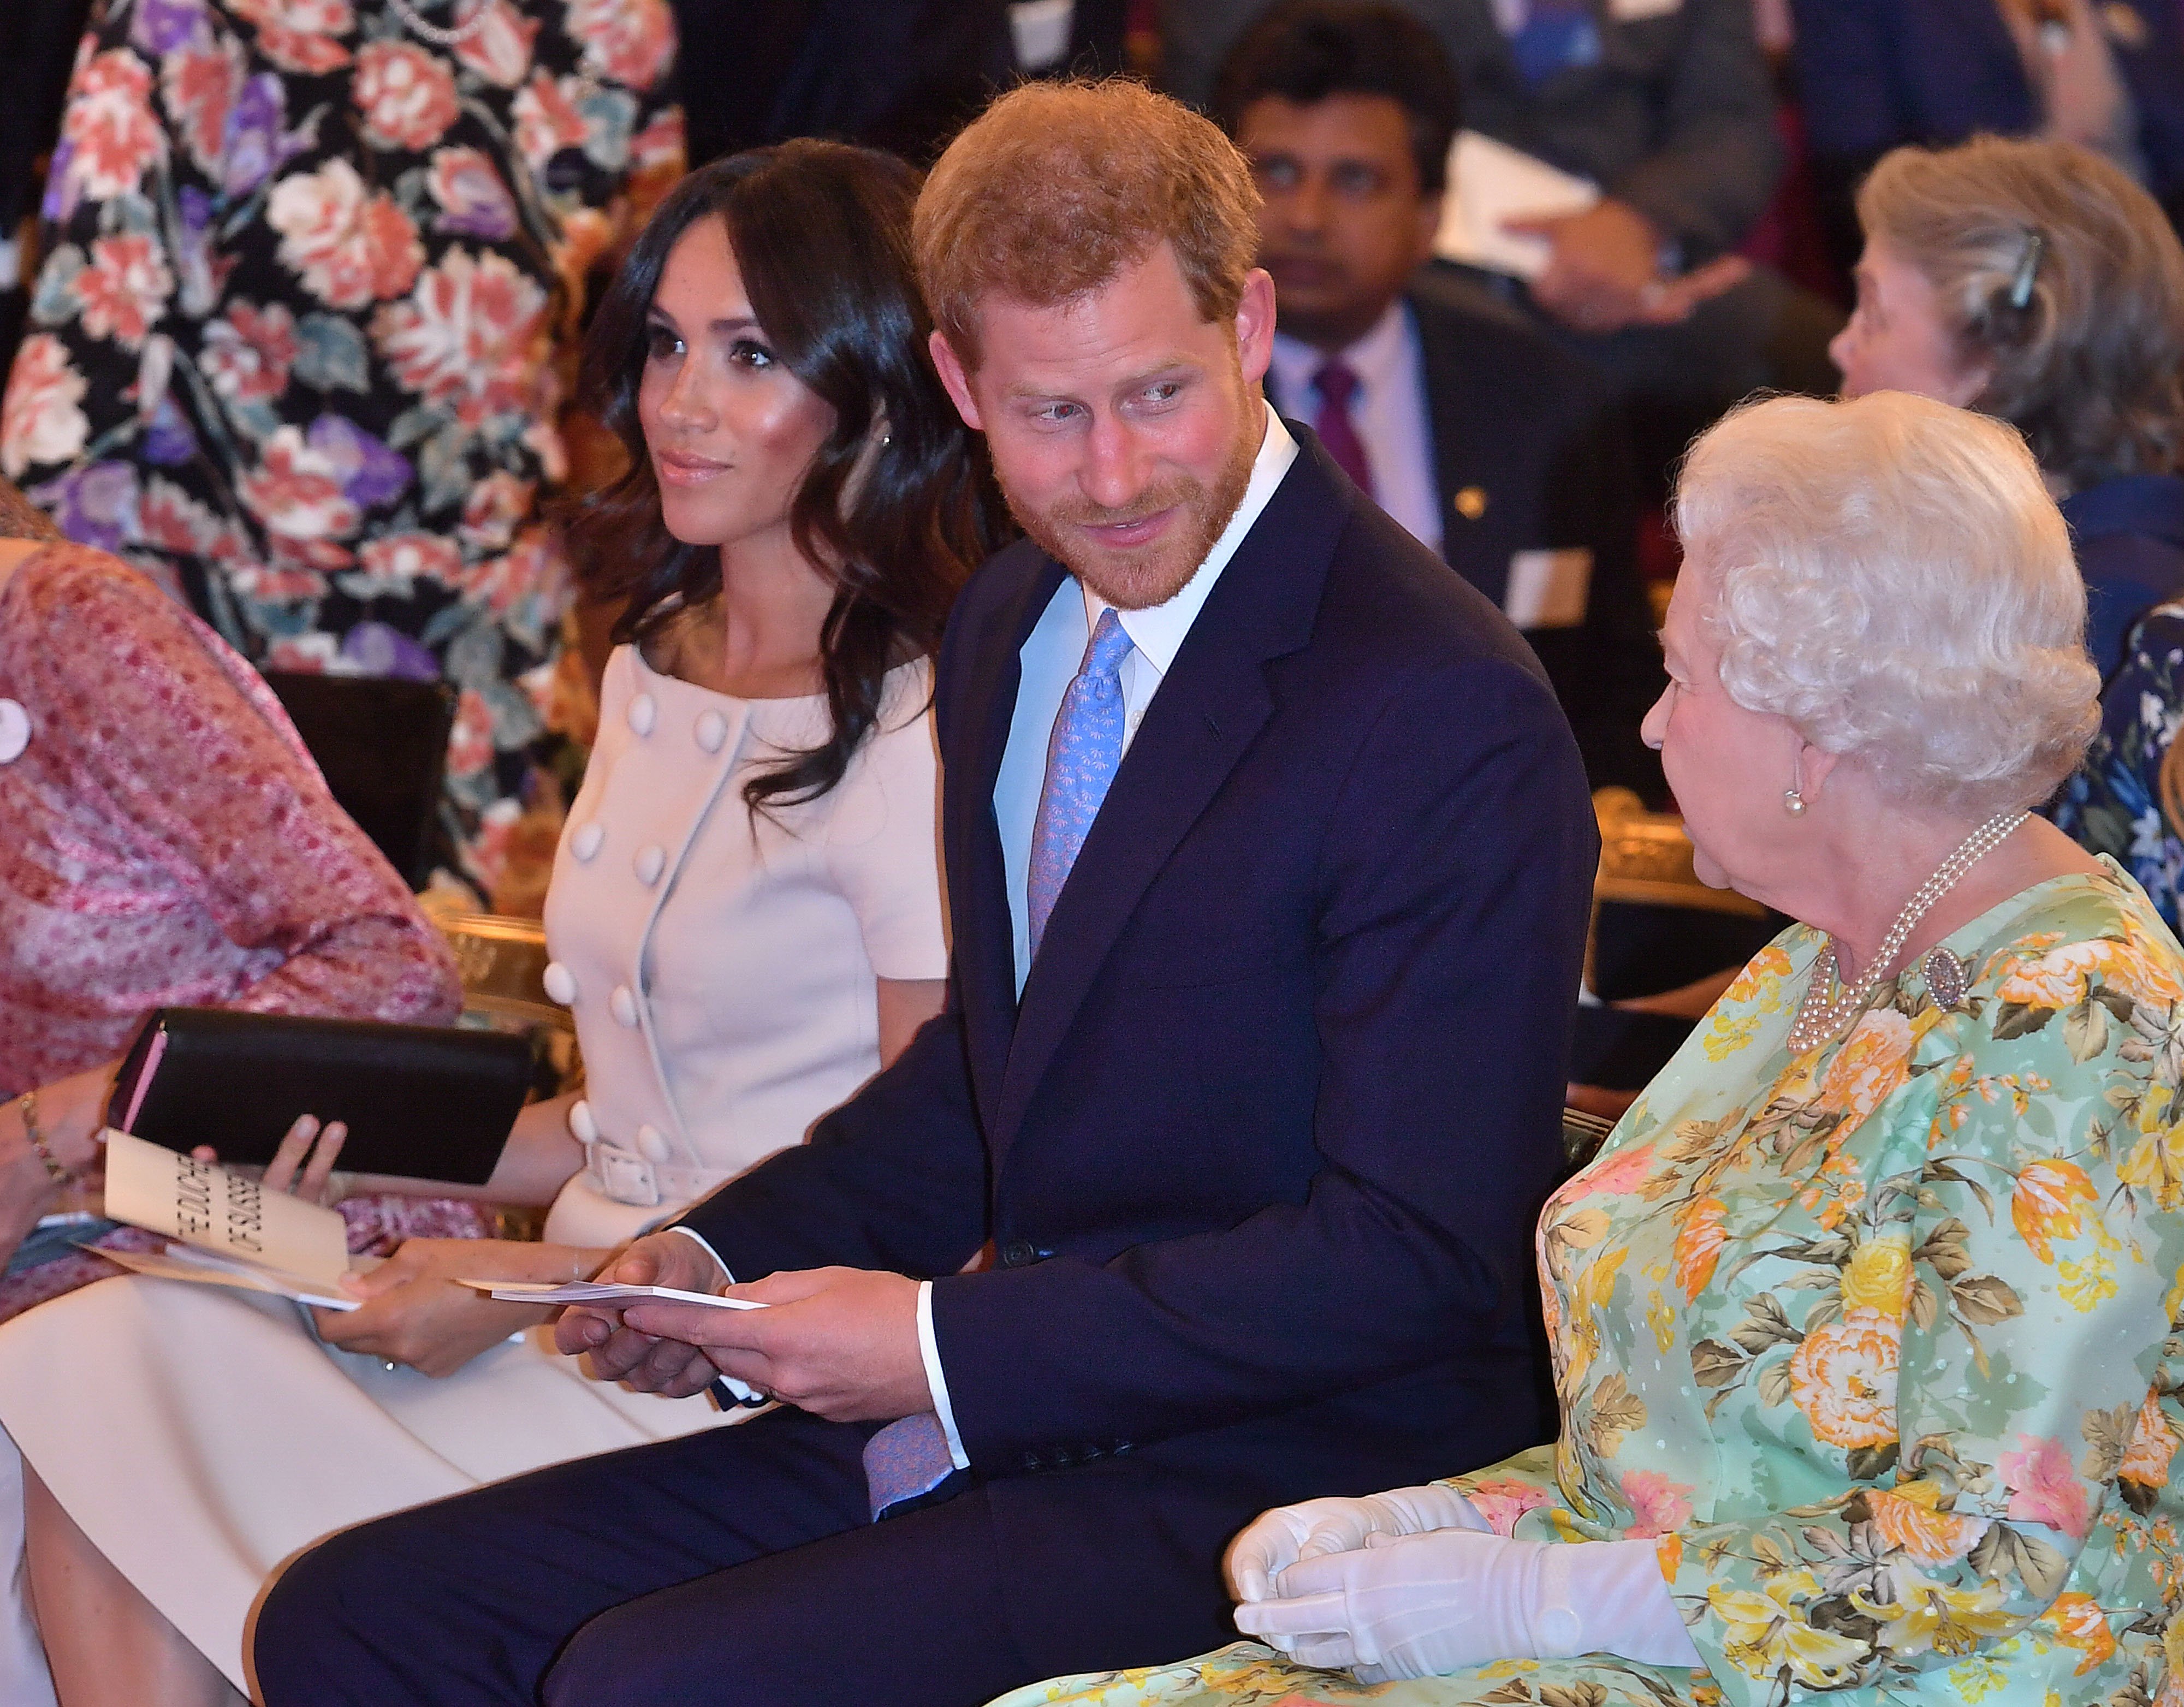 La reina Elizabeth II con el príncipe Harry y Meghan Markle en la ceremonia de entrega de premios Queen's Young Leaders Awards en el palacio de Buckingham, el 26 de junio de 2018 en Londres, Inglaterra. | Foto: Getty Images